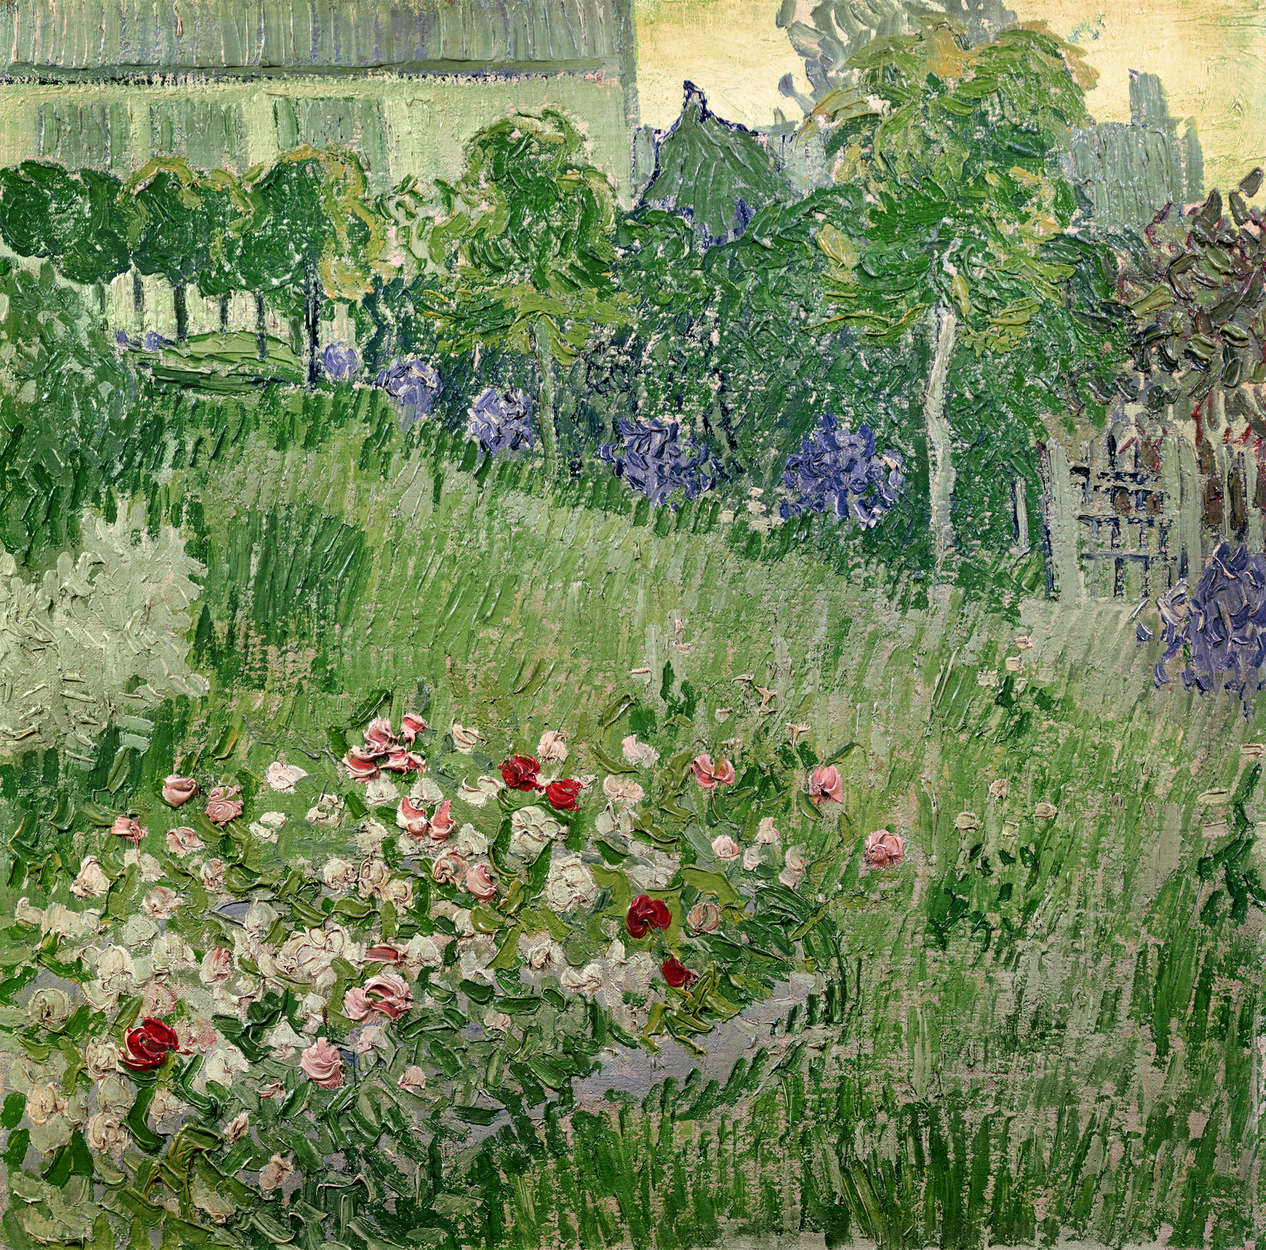             Mural "El jardín de Daubigny" de Vincent van Gogh
        